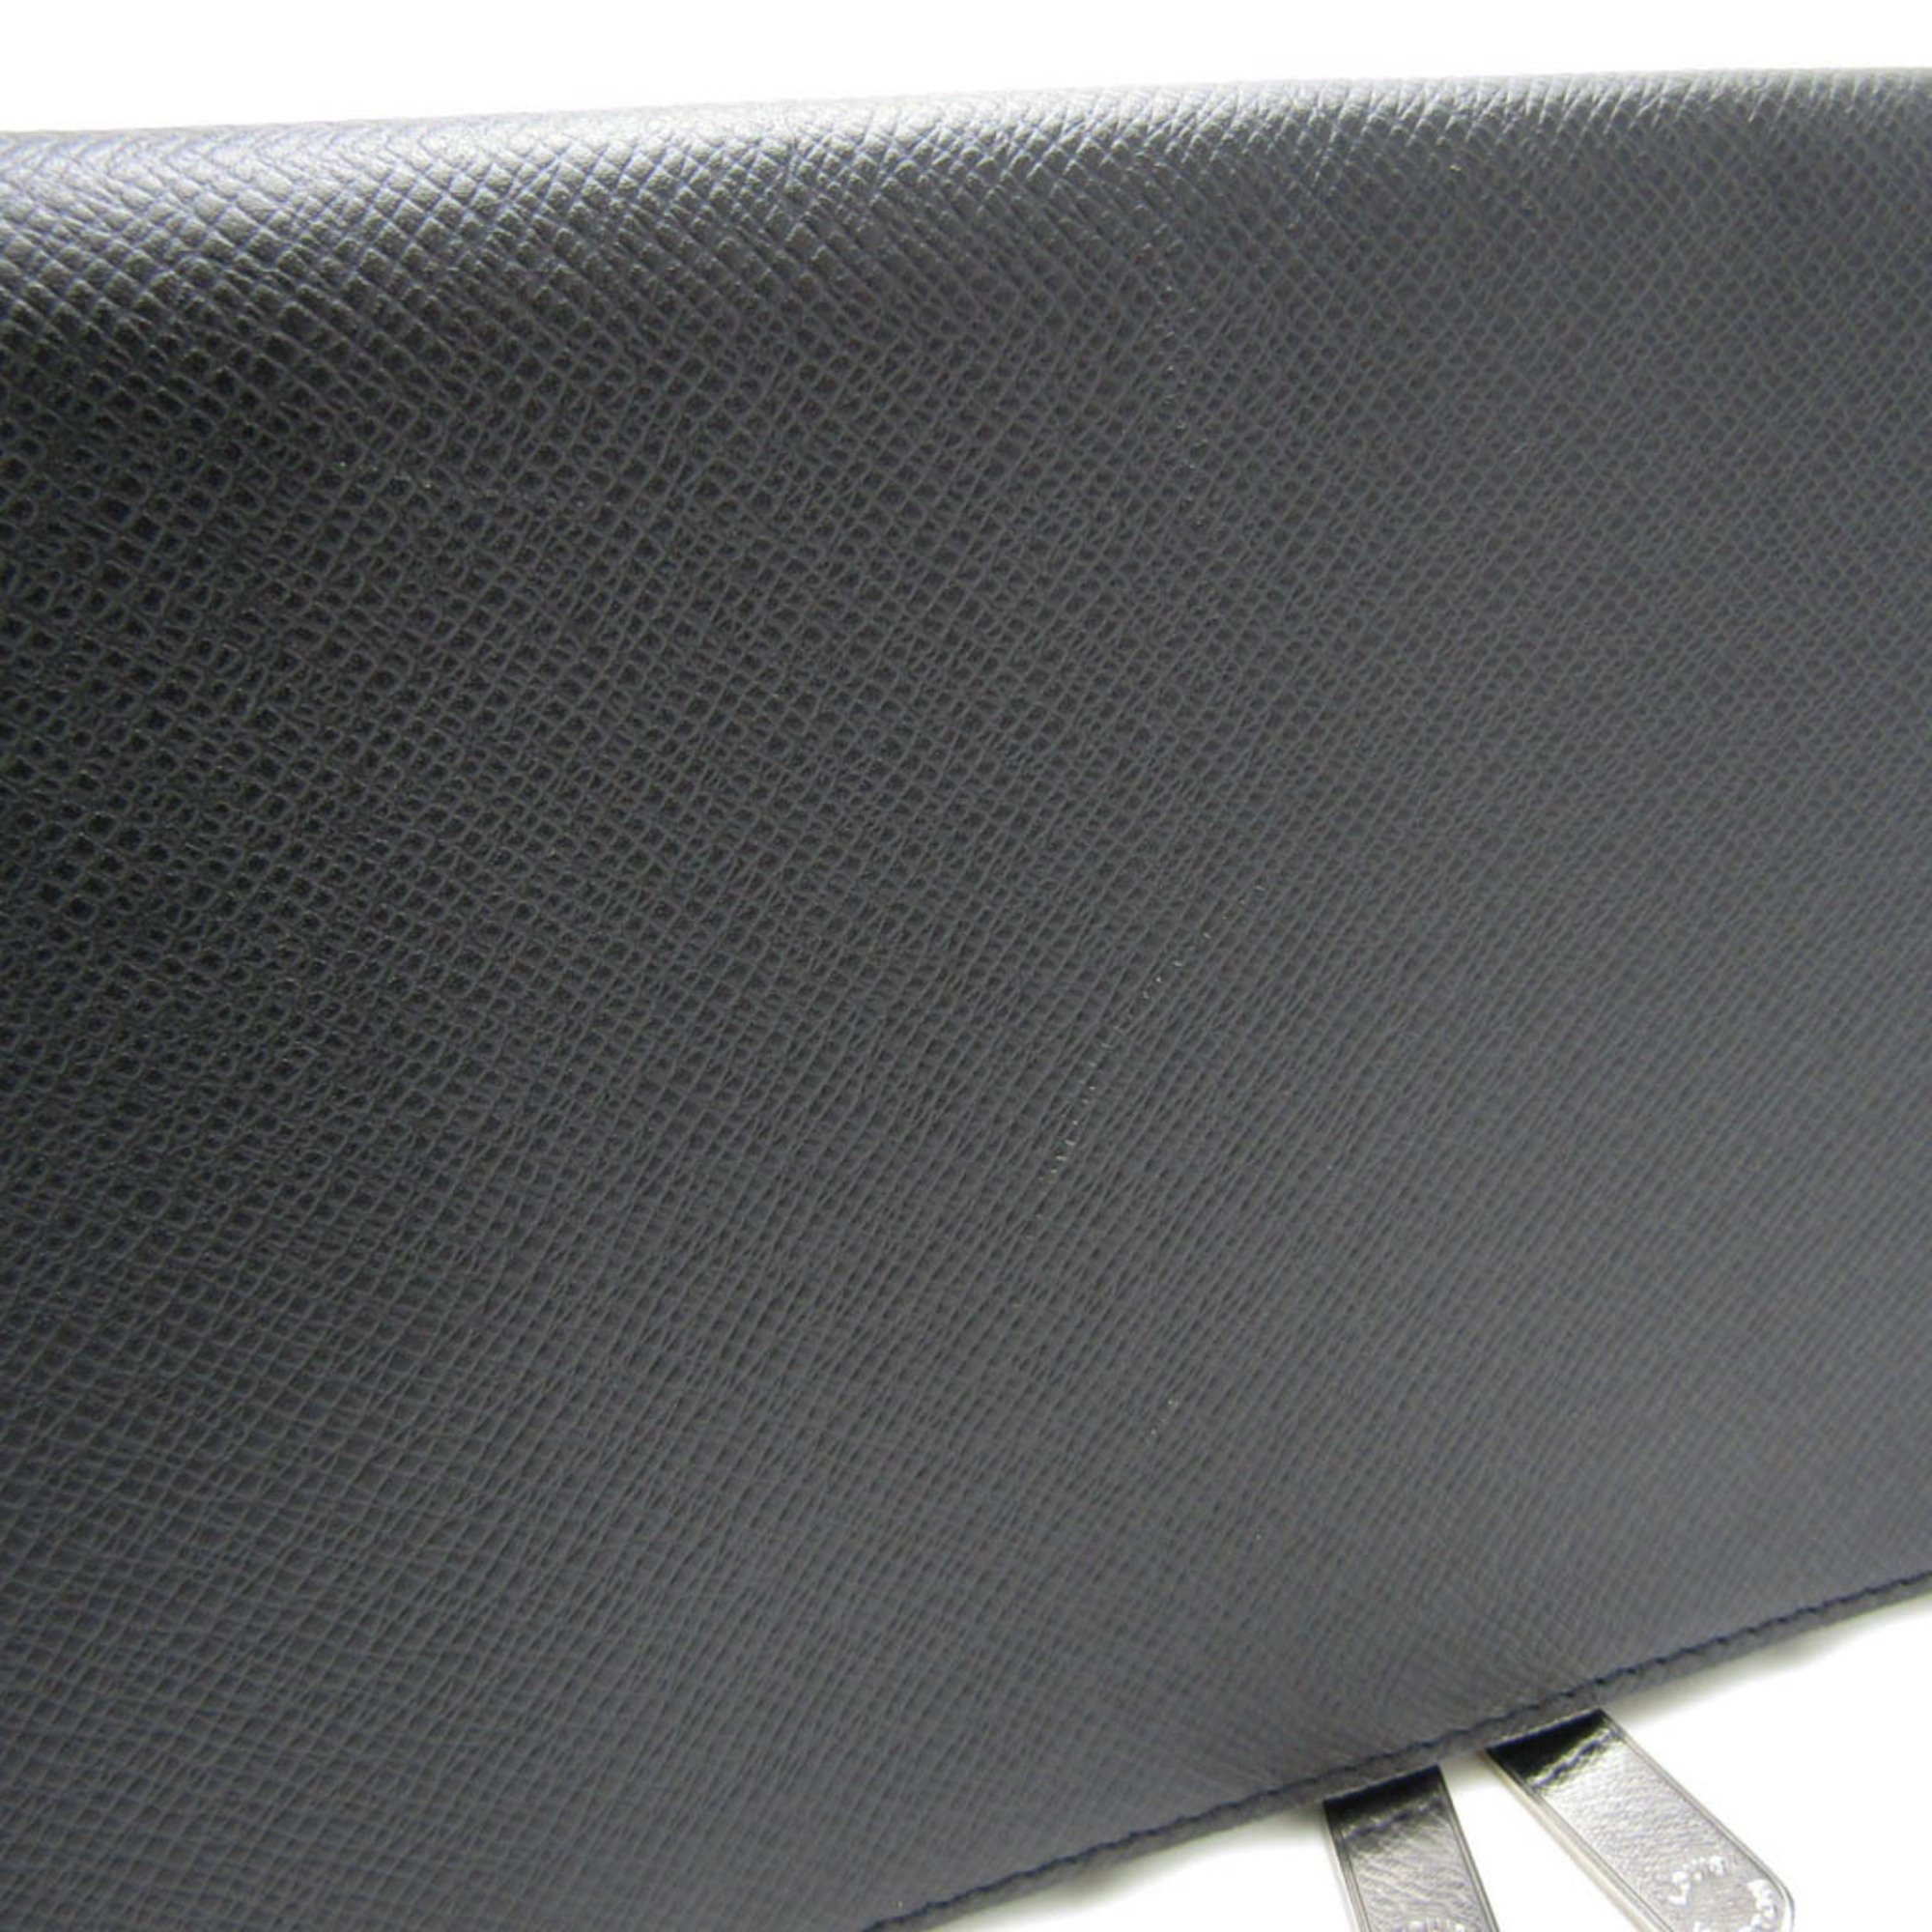 ルイ・ヴィトン(Louis Vuitton) エテュイ 5クラヴァット ネクタイケース M30302 メンズ ネクタイ タイガ ブラック